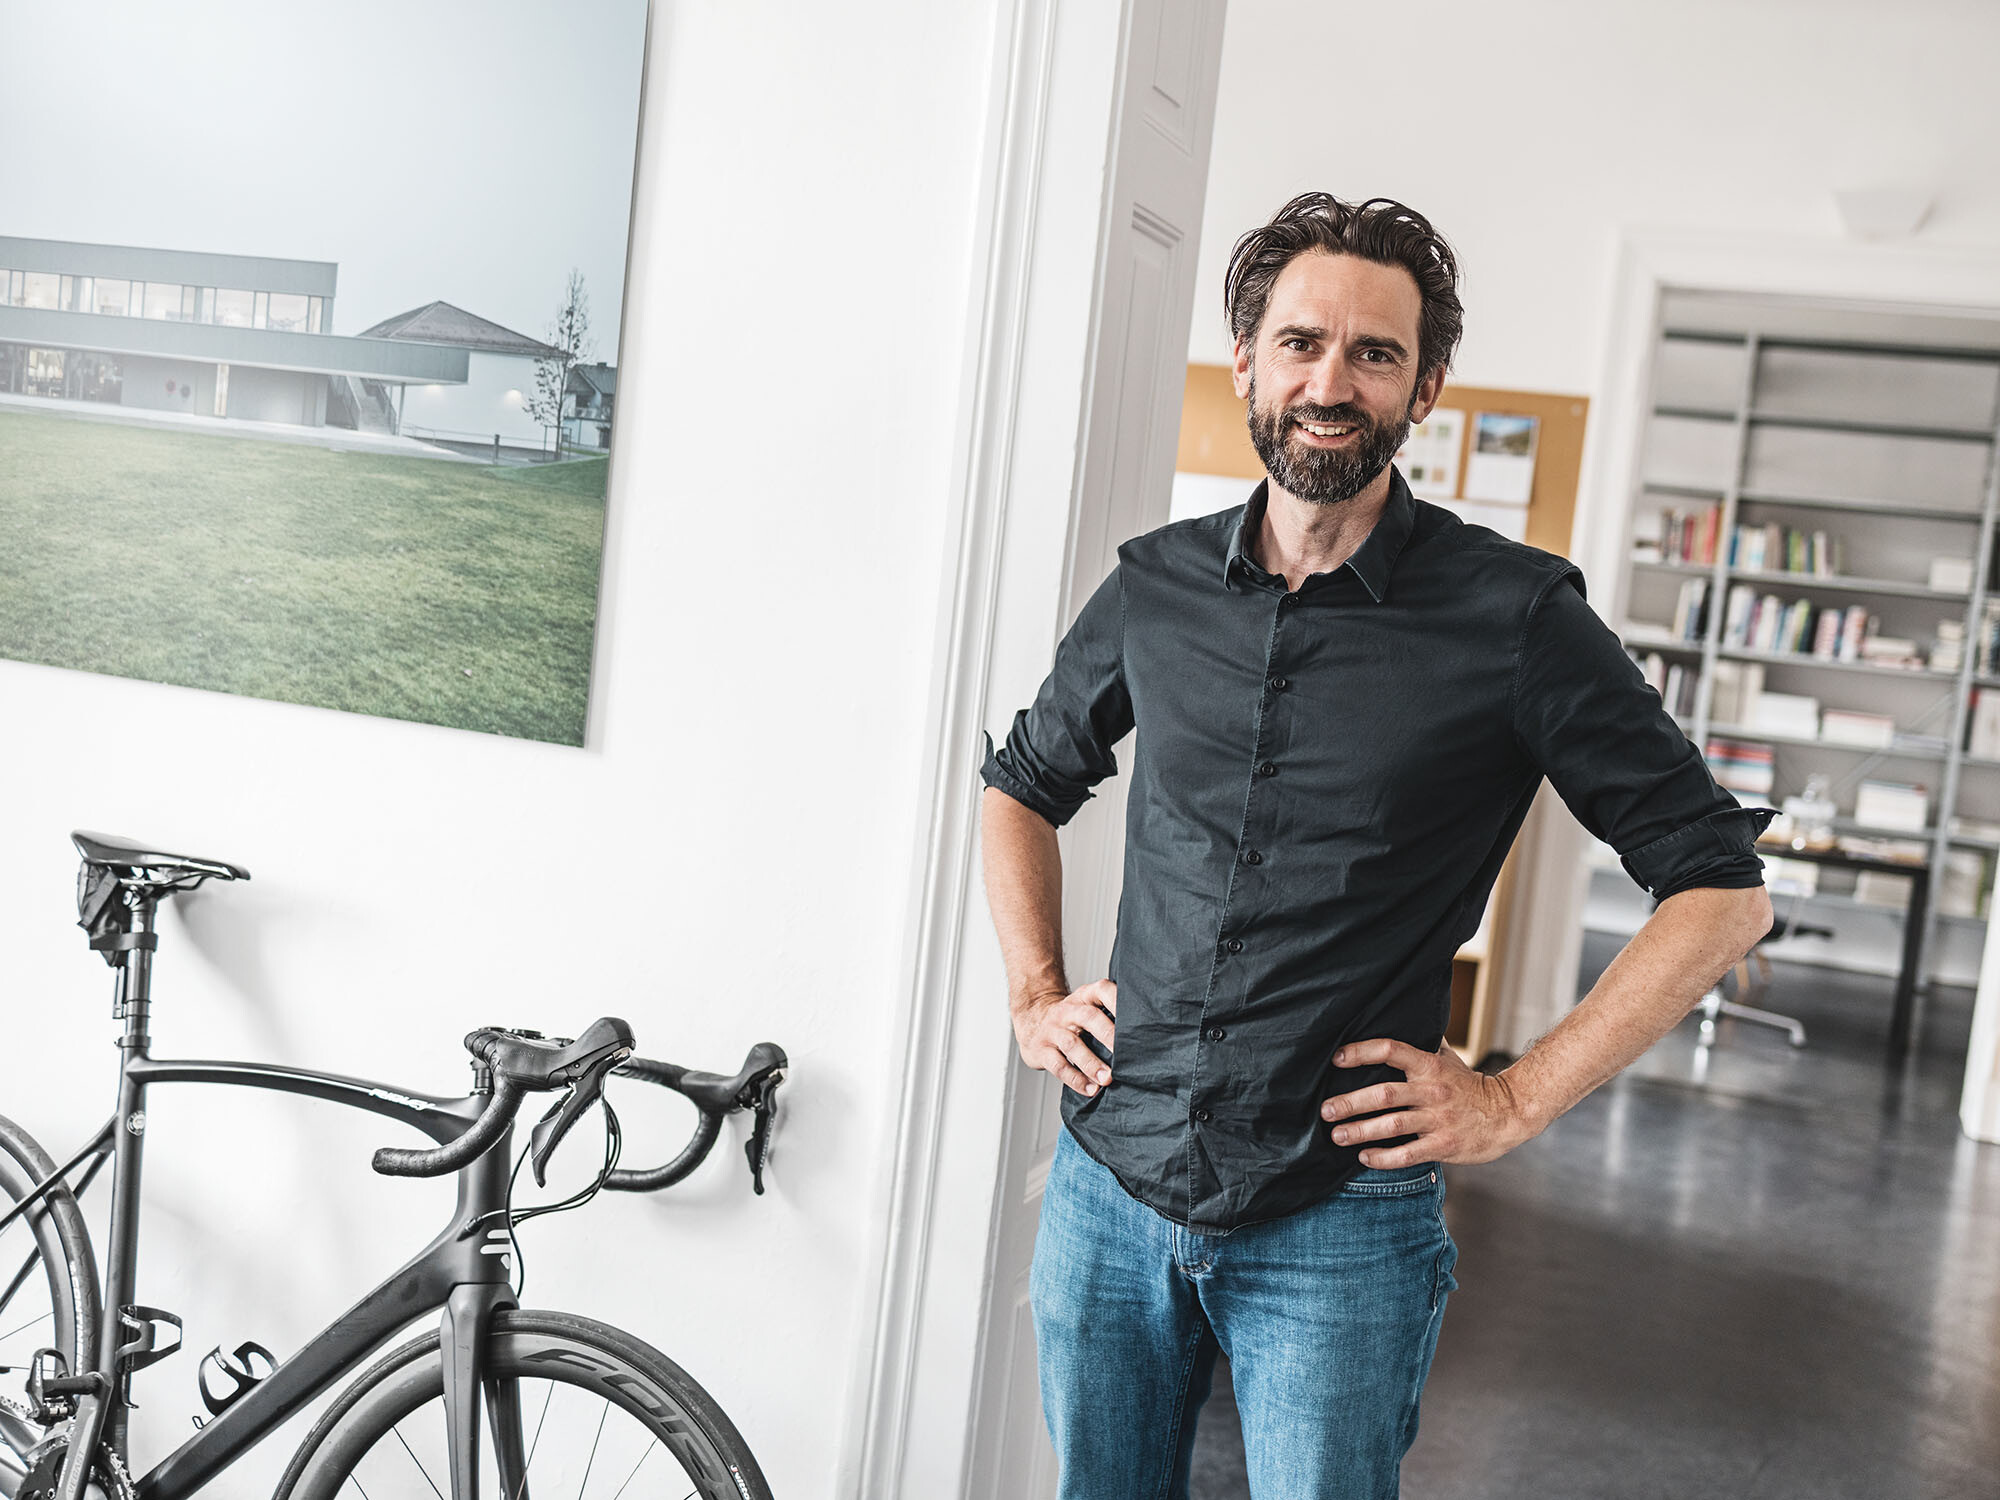 Portrait des leitenden Architekten Thomas Heil; hinter ihm erstreckt sich ein Büroraum, neben ihm ist ein Fahrrad an die Wand gelehnt.